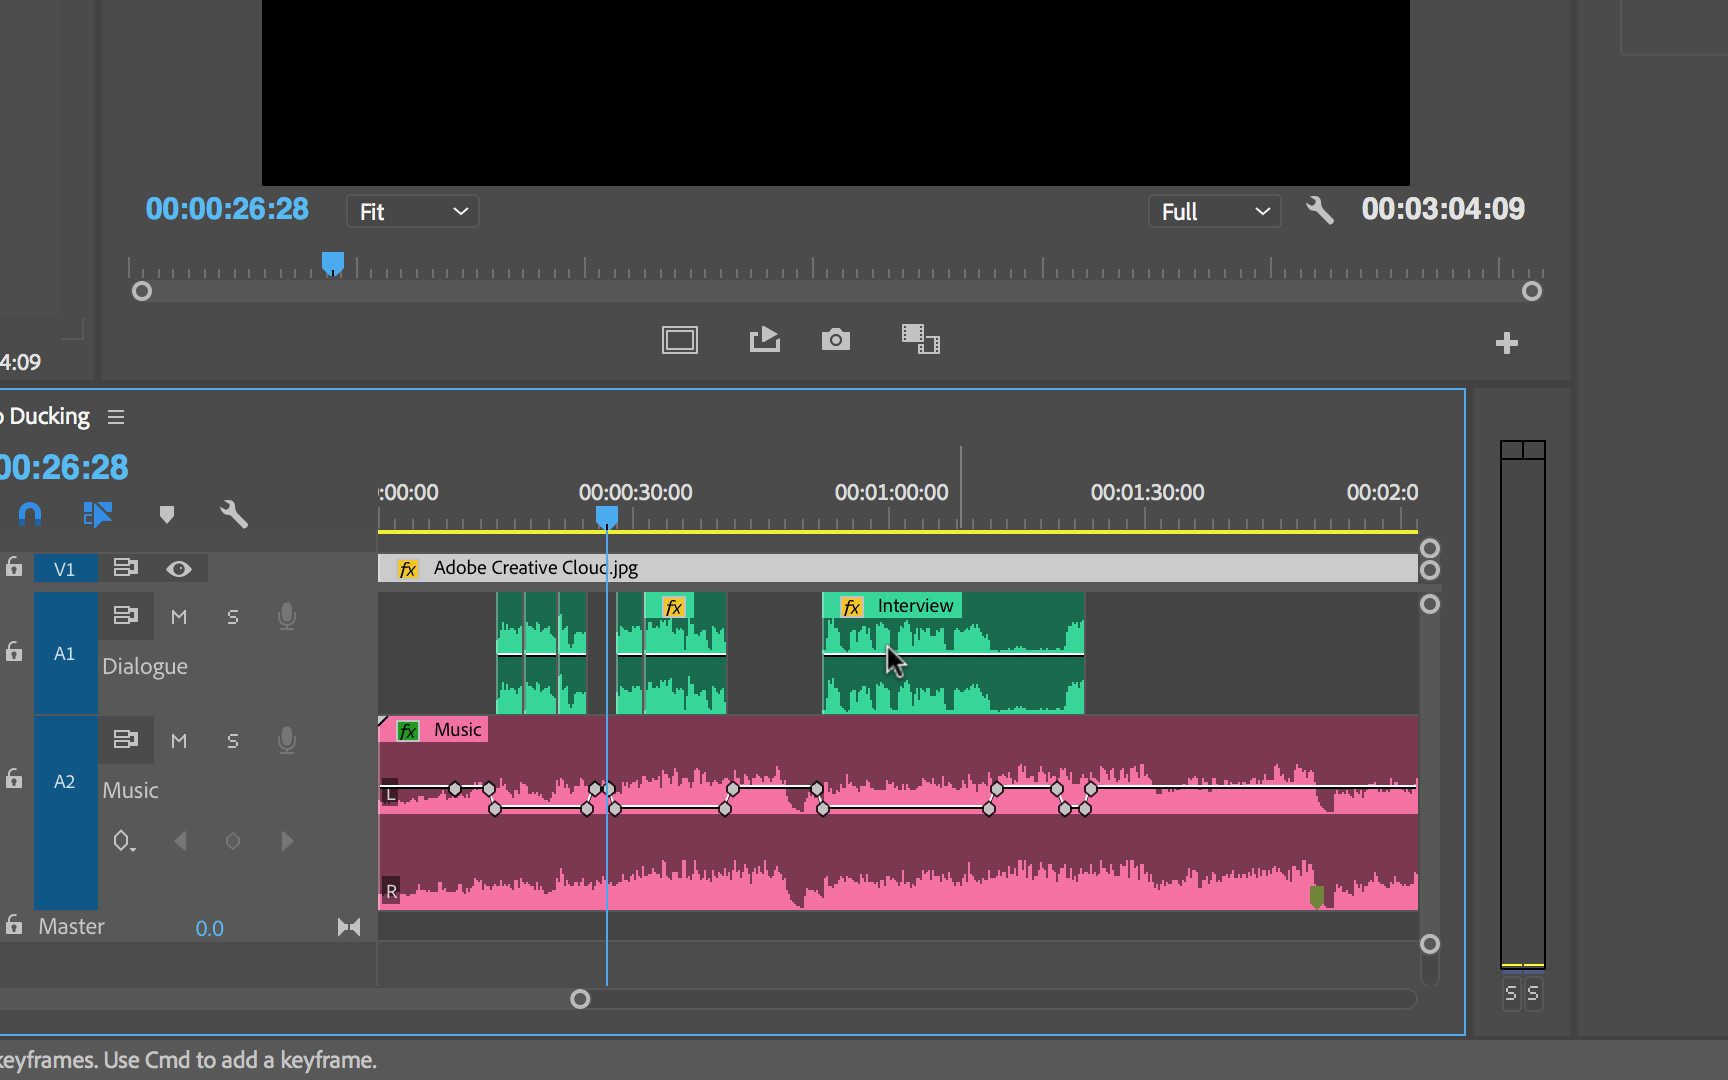 Adobe Premiere Pro Auto Audio Ducking